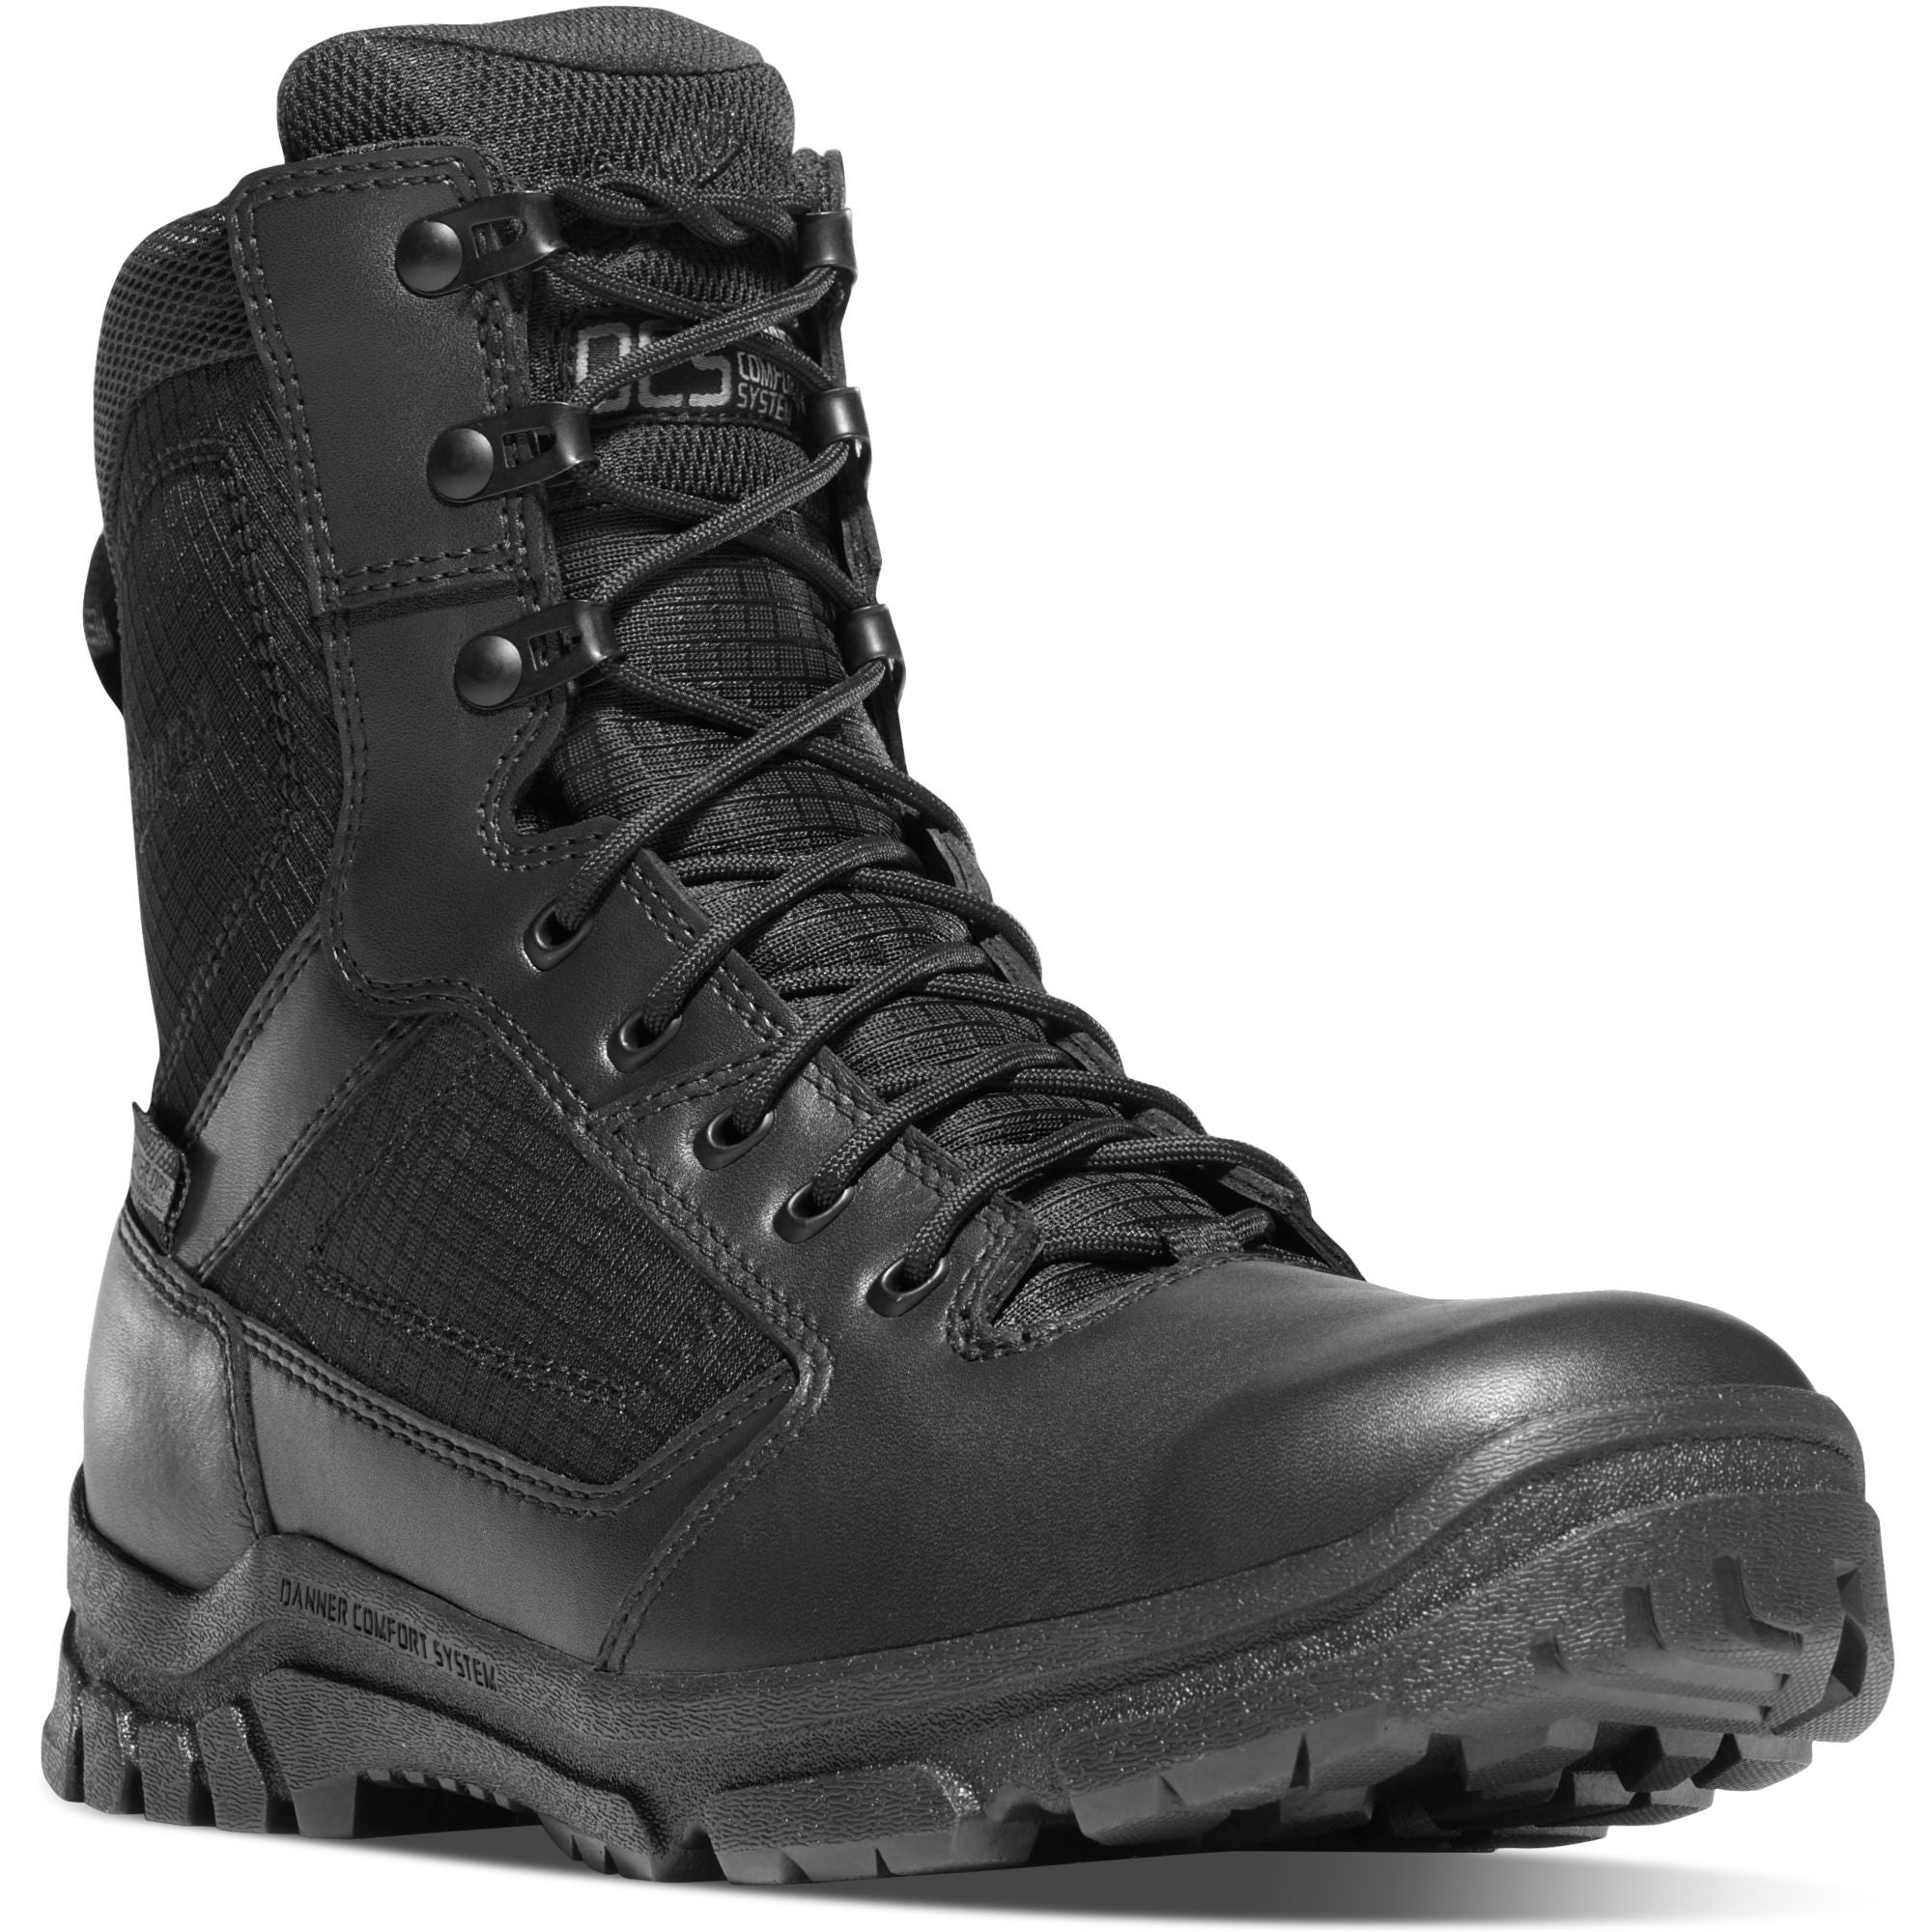 Danner Men's Lookout 8" Waterproof Duty Boot - Black - 23822 7 / Medium / Black - Overlook Boots